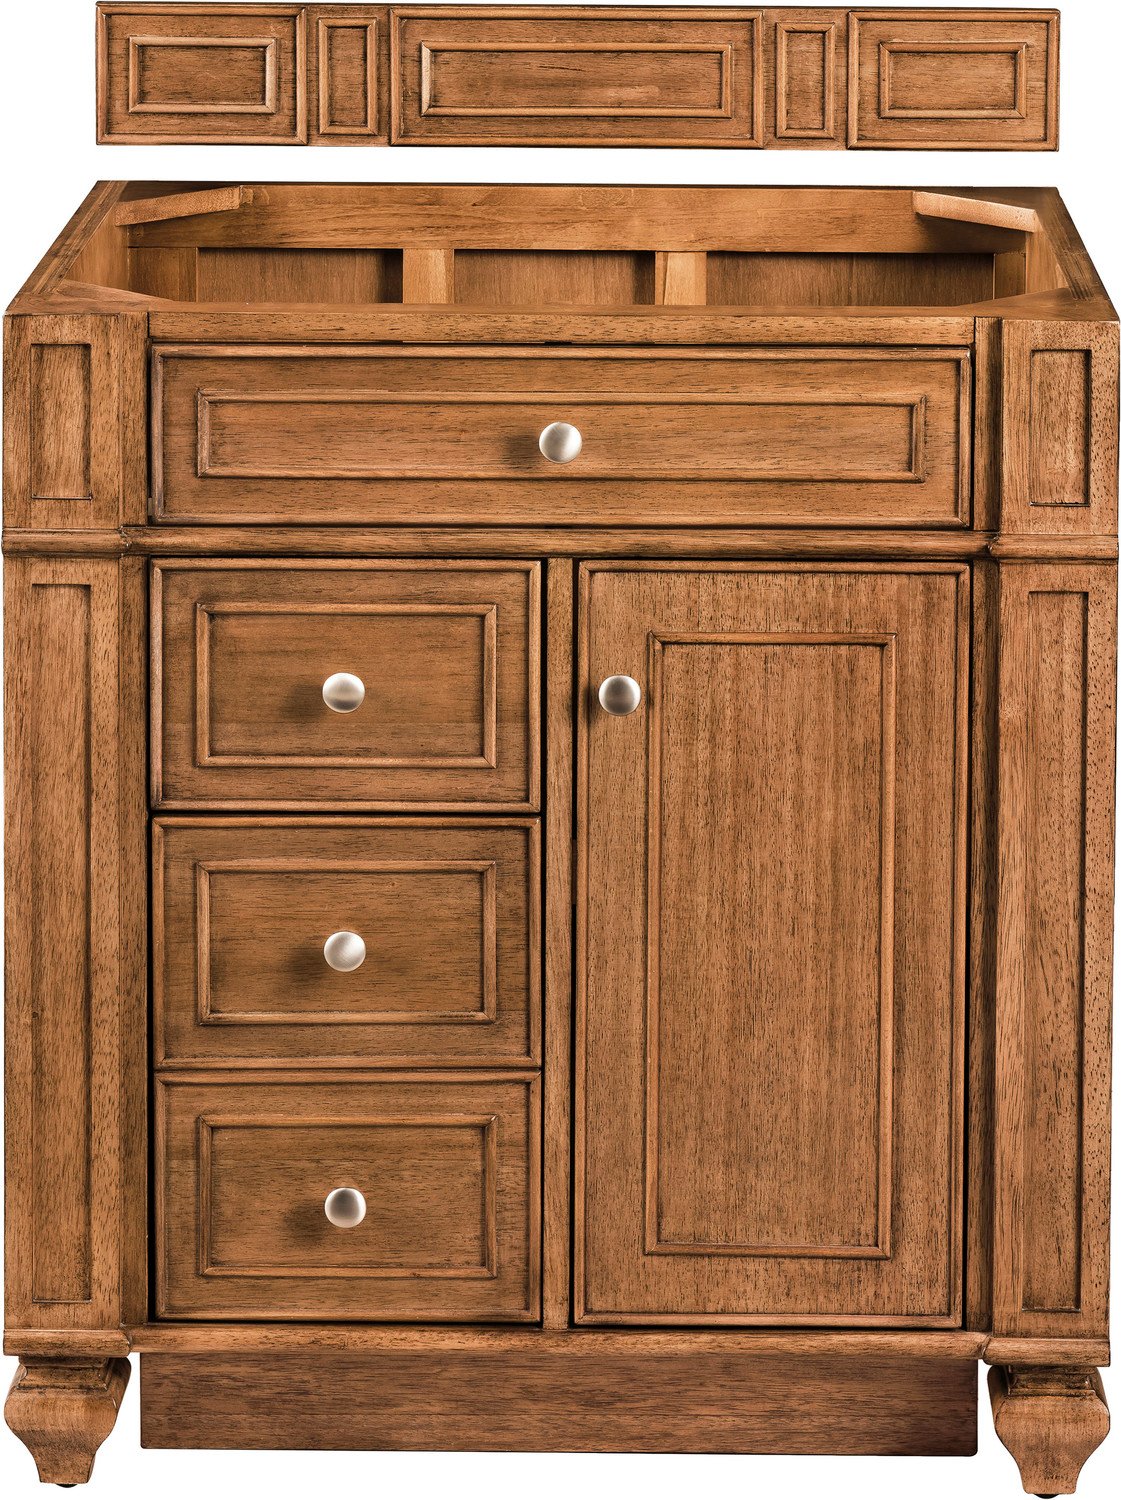 antique wood bathroom vanity James Martin Cabinet Saddle Brown Transitional